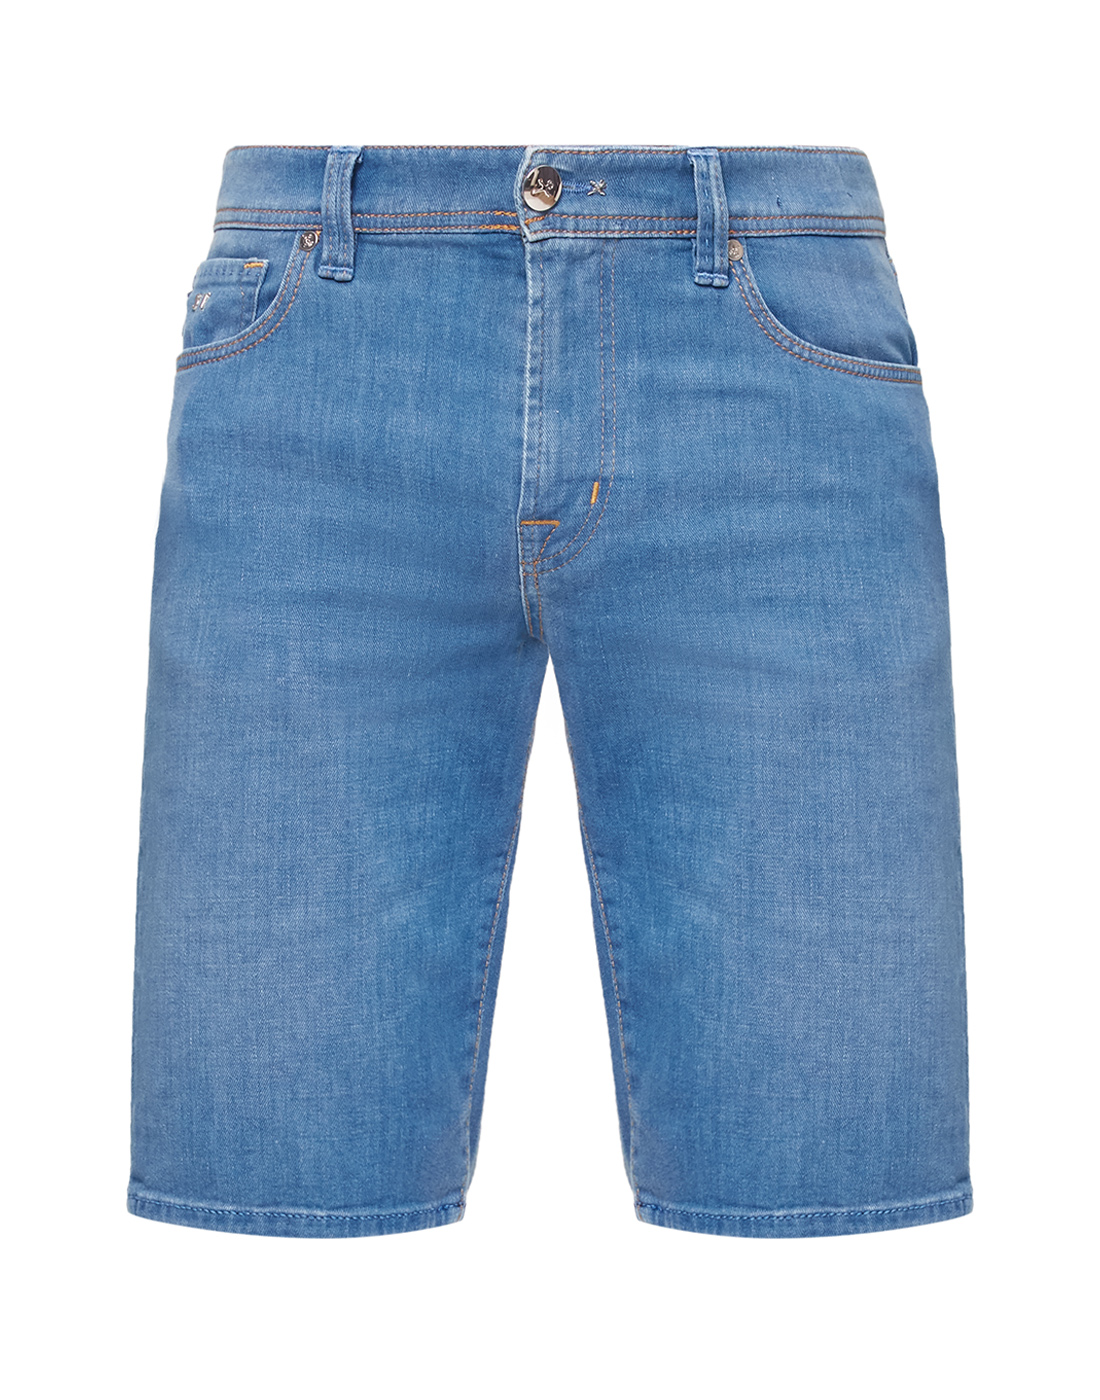 Чоловічі сині джинсові шорти-1